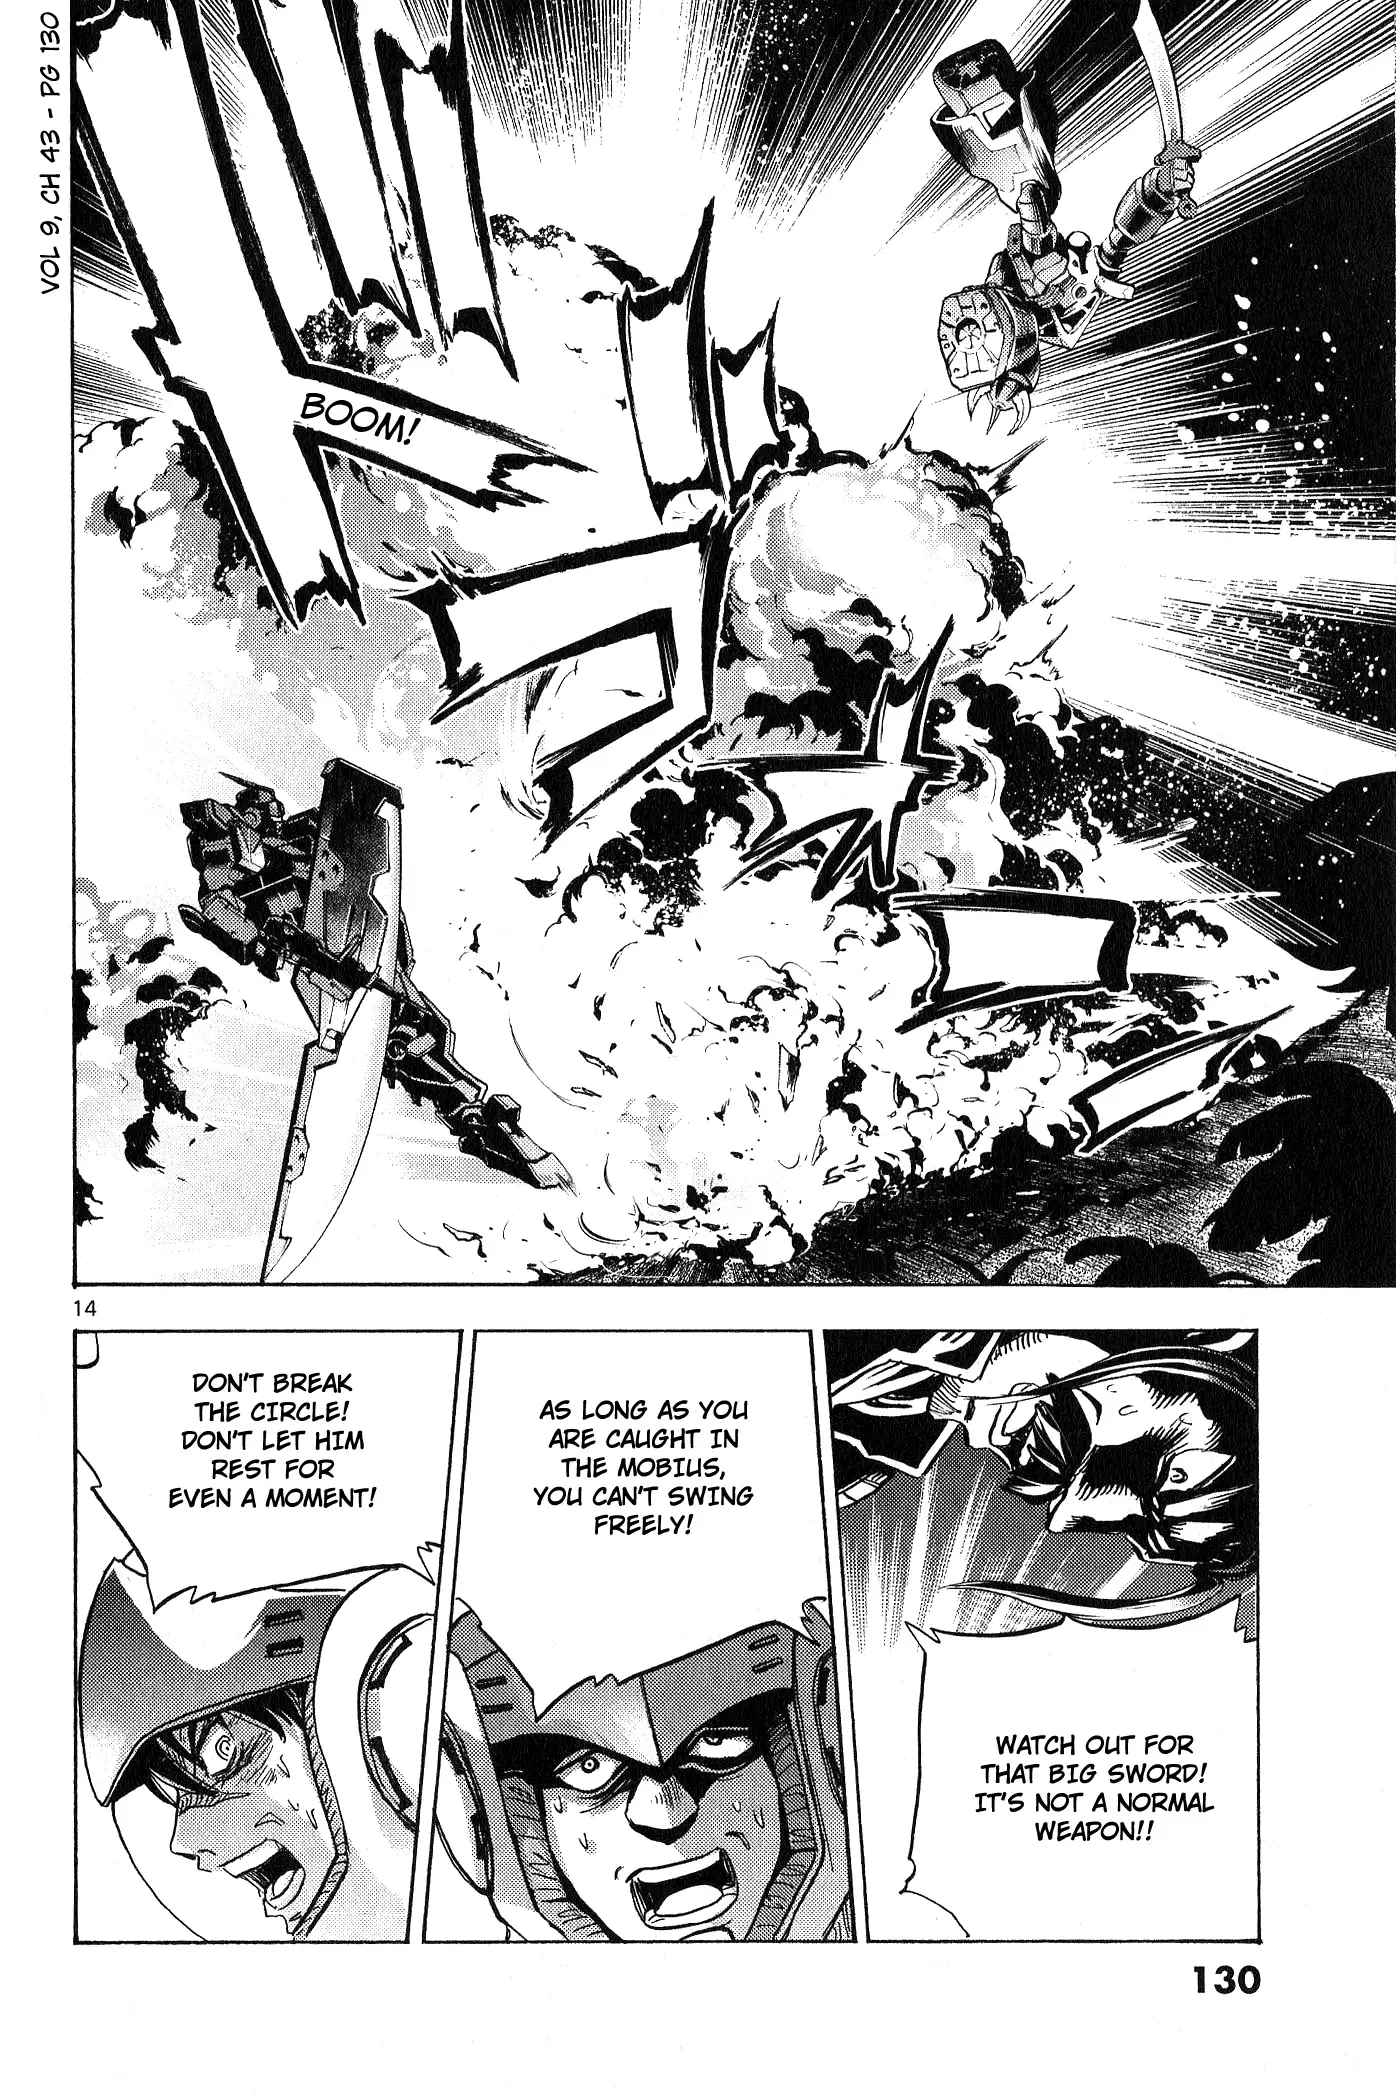 Mobile Suit Gundam Aggressor - 43 page 14-27af391f